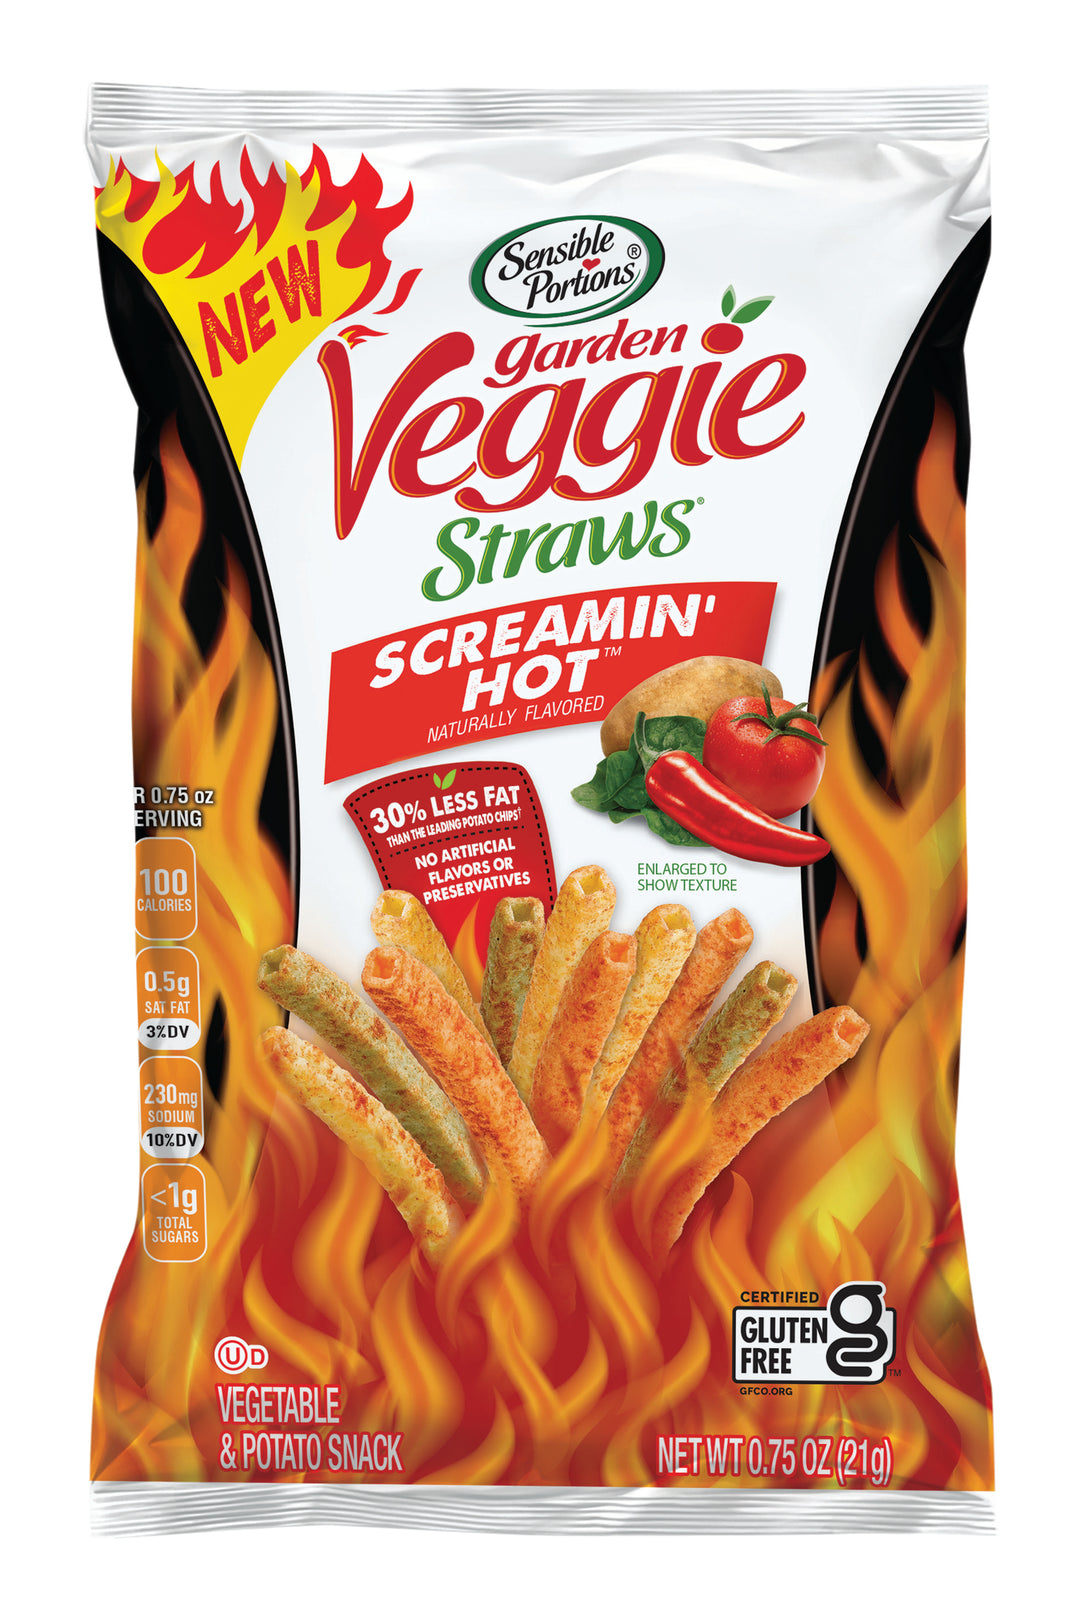 Sensible Portions Garden Veggie Straws Screamin Hot-0.75 oz.-24/Case